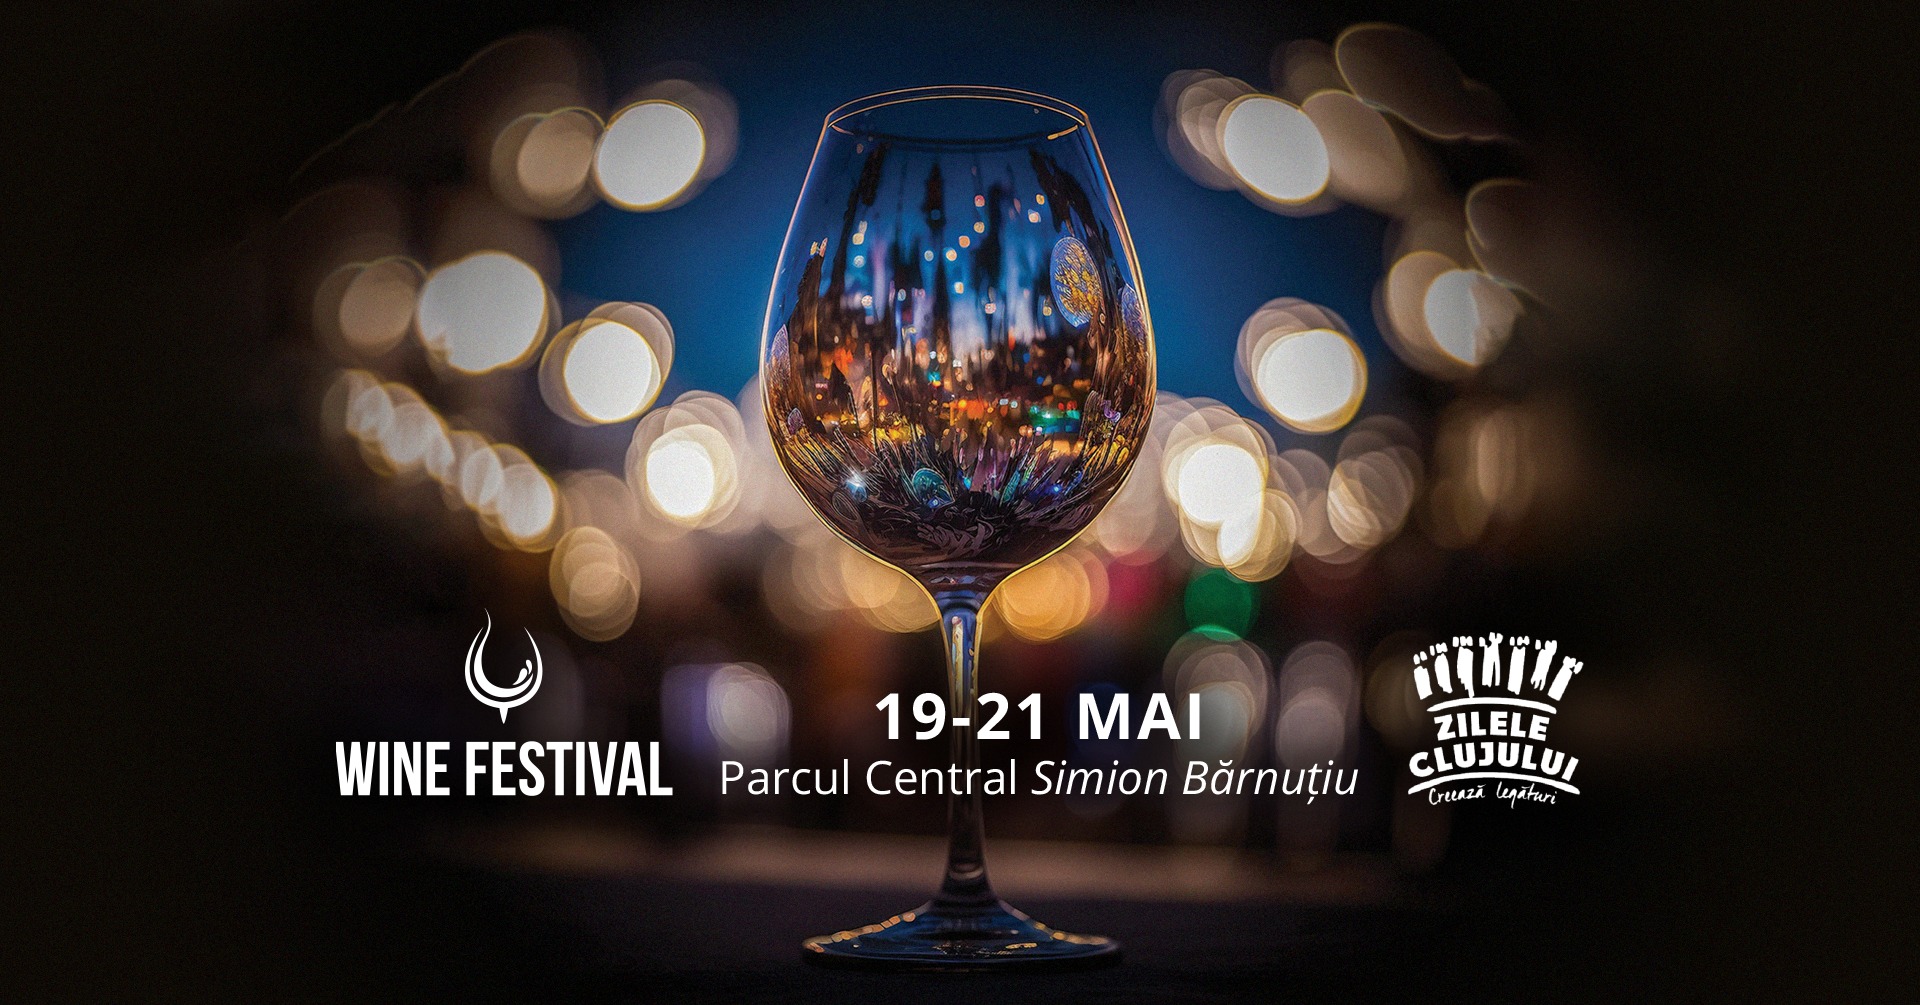 Festivalul de vin Zilele Clujului